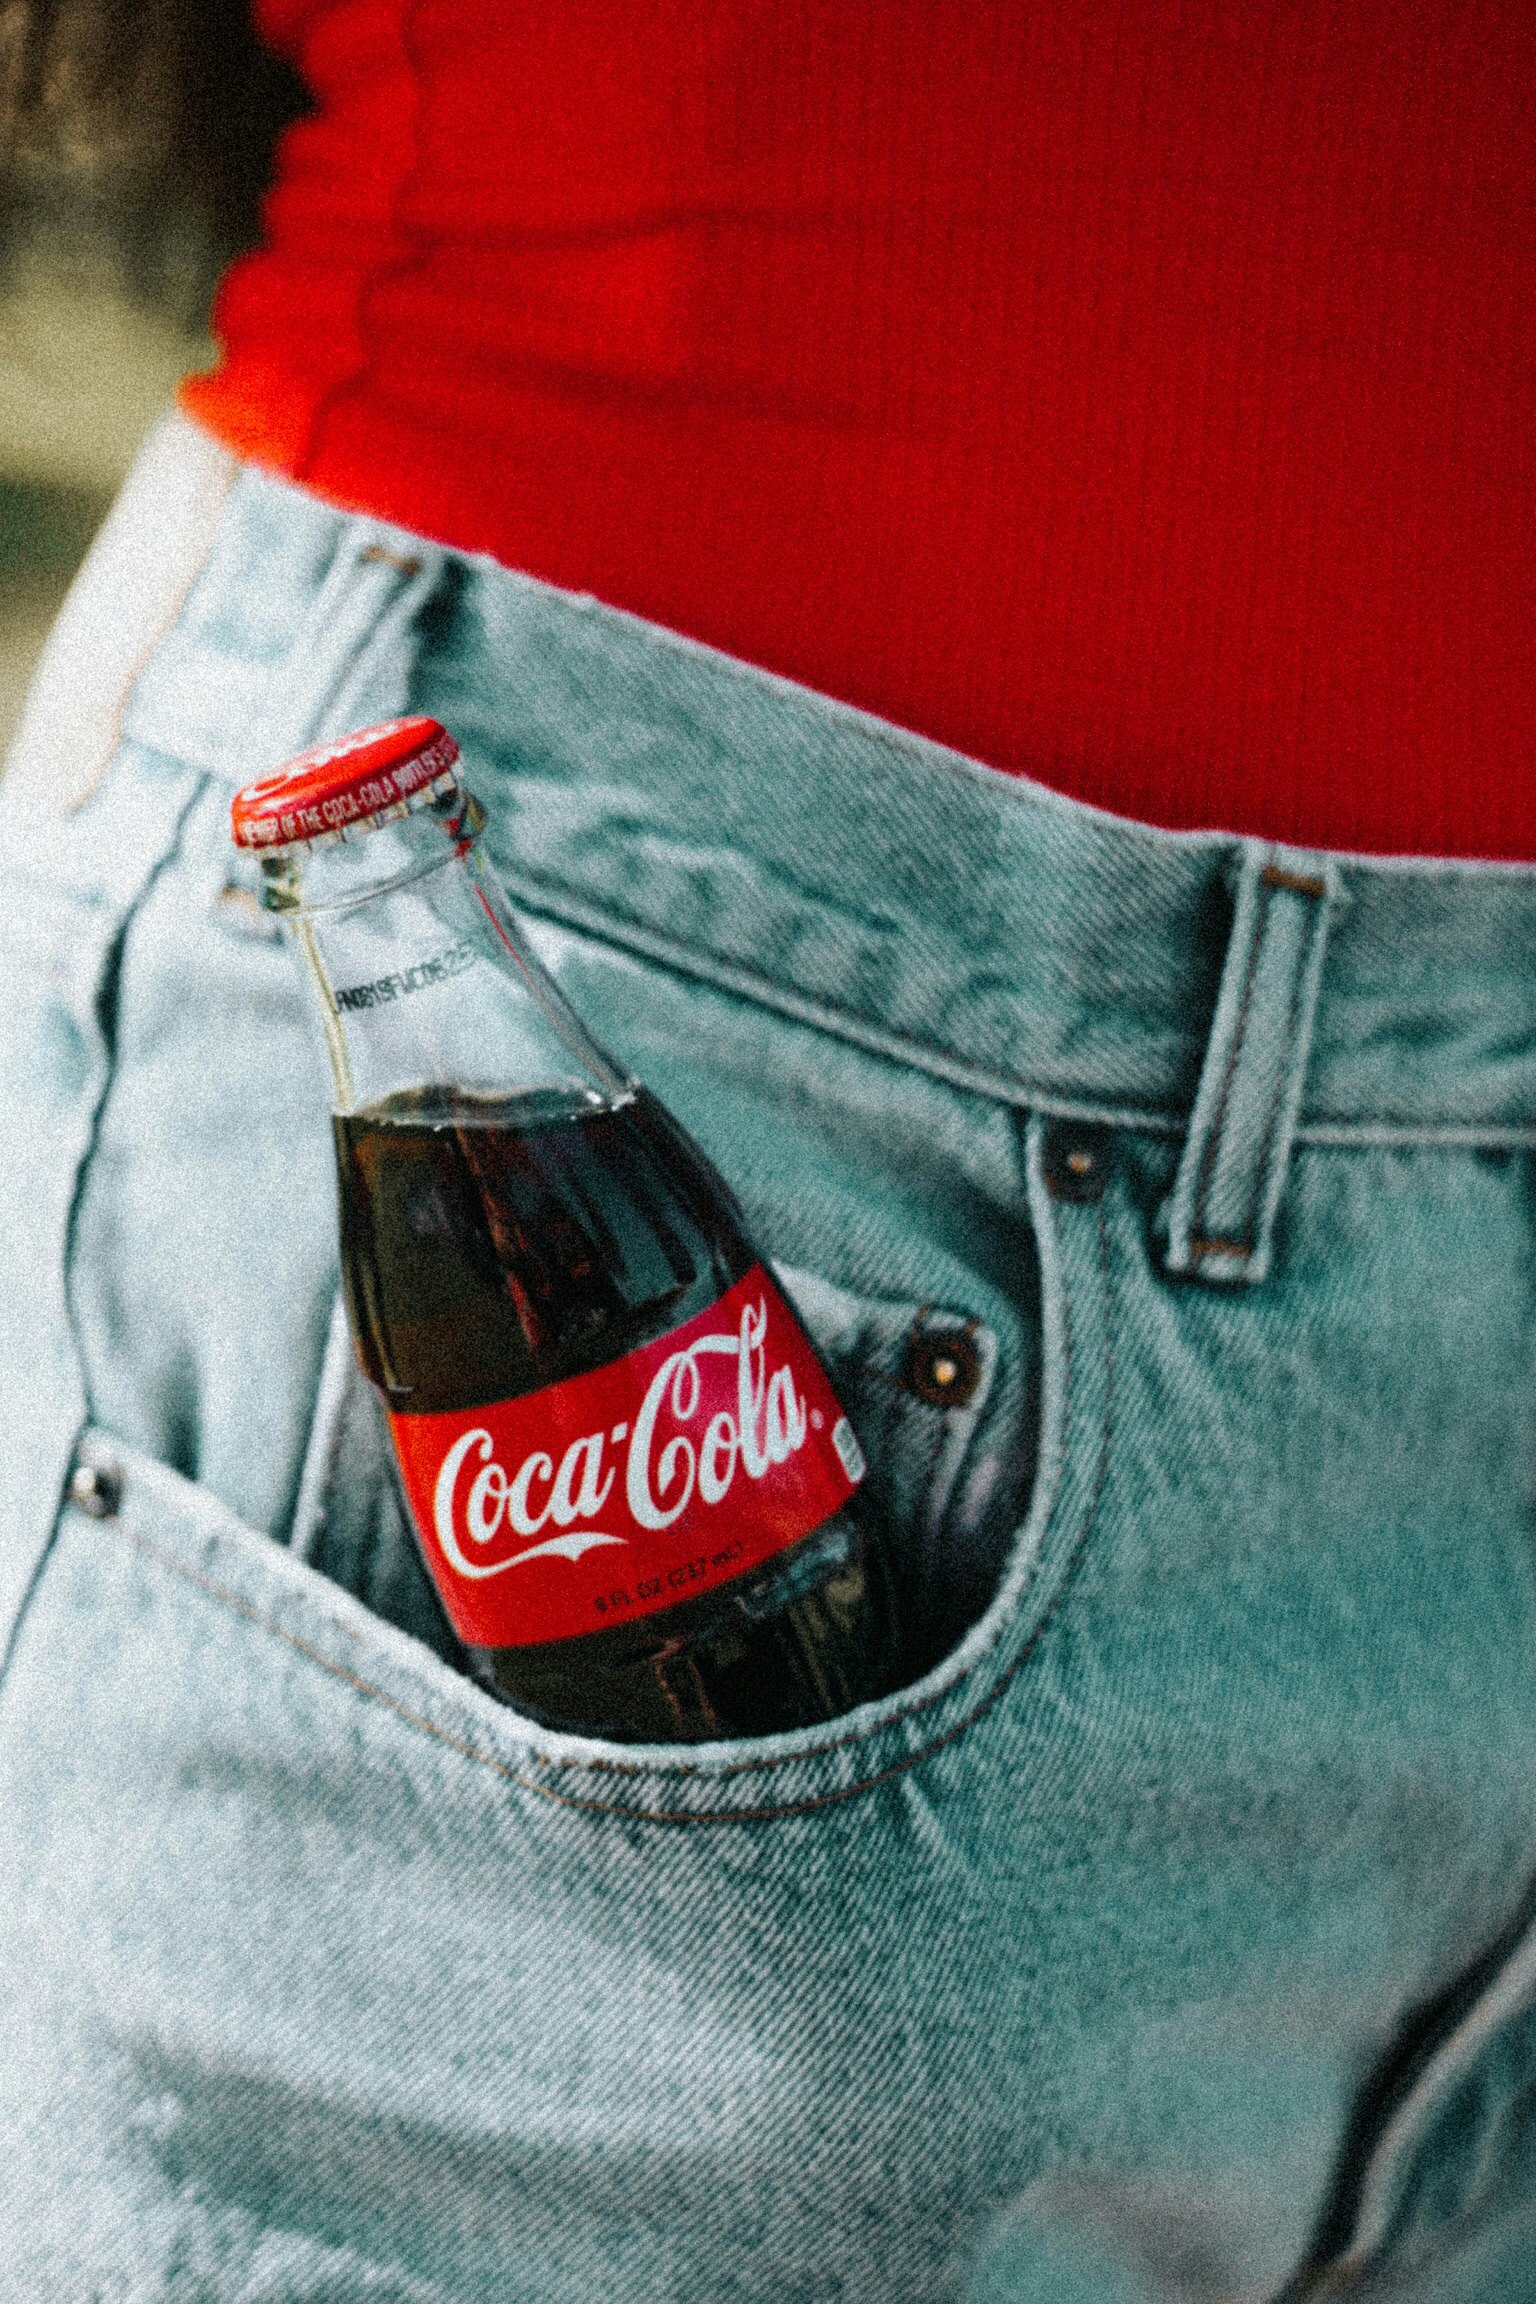 Coca-Cola glass bottle on pocket